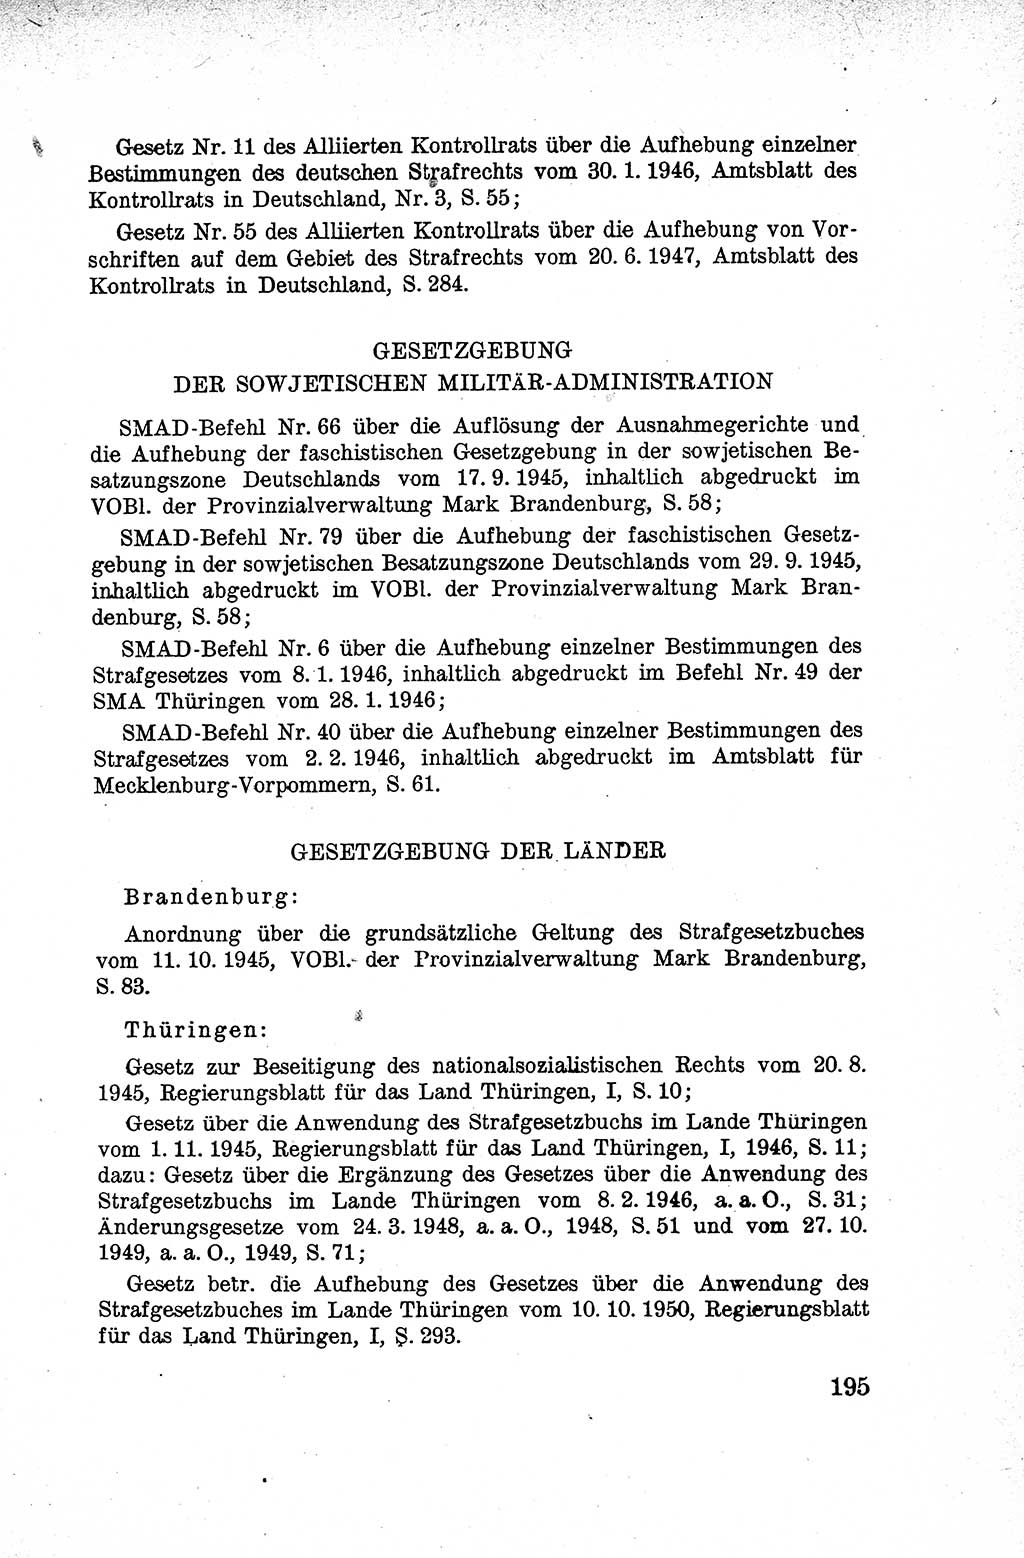 Lehrbuch des Strafrechts der Deutschen Demokratischen Republik (DDR), Allgemeiner Teil 1959, Seite 195 (Lb. Strafr. DDR AT 1959, S. 195)